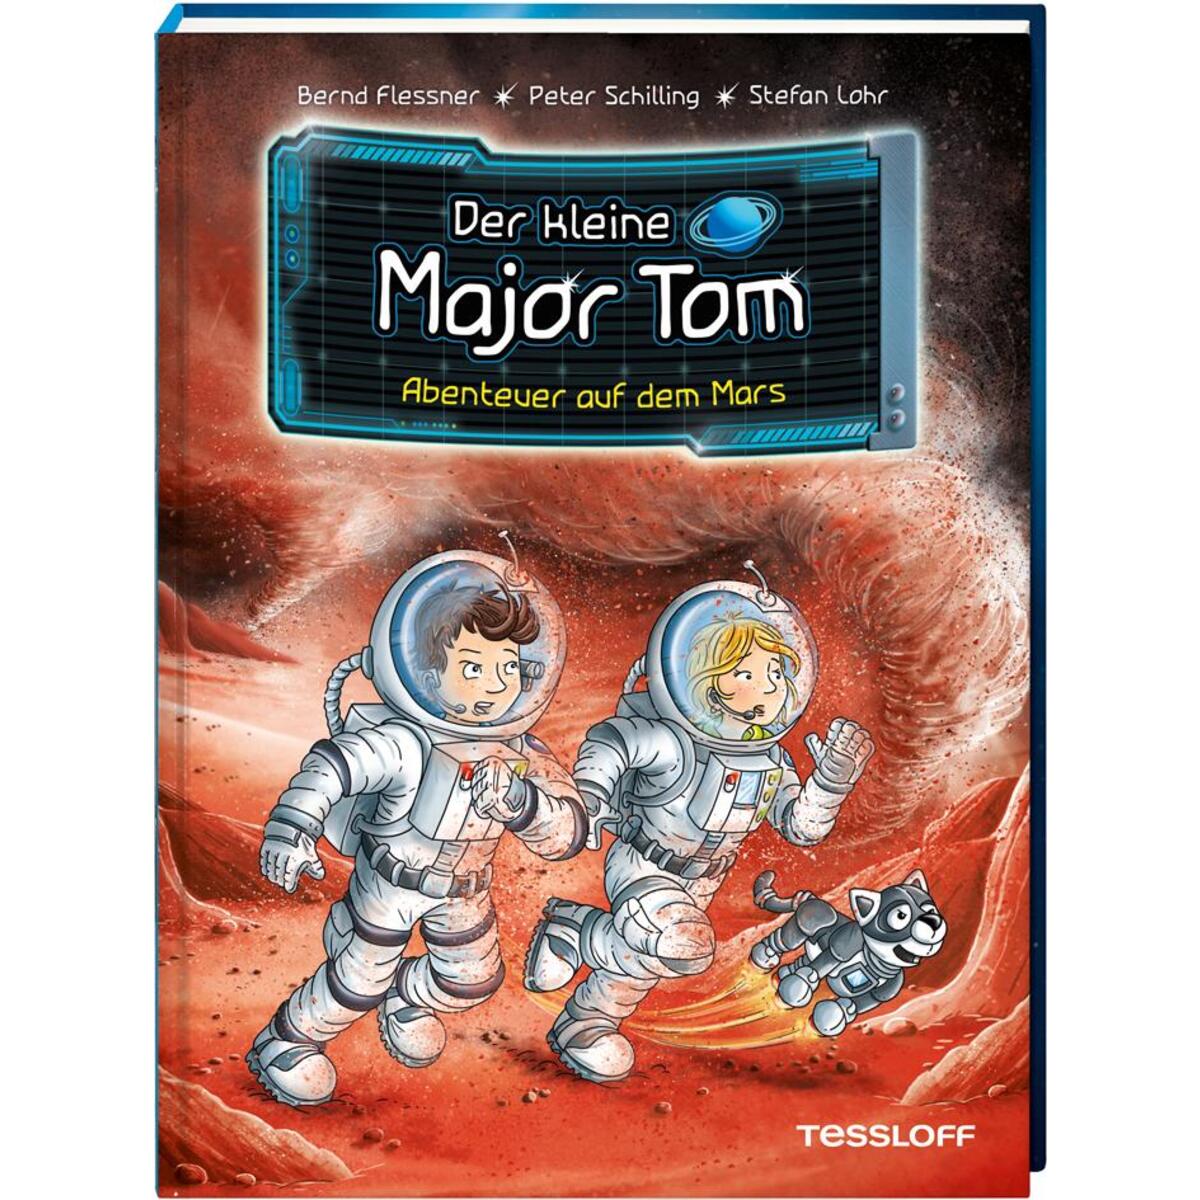 Der kleine Major Tom, Band 6: Abenteuer auf dem Mars von Tessloff Verlag